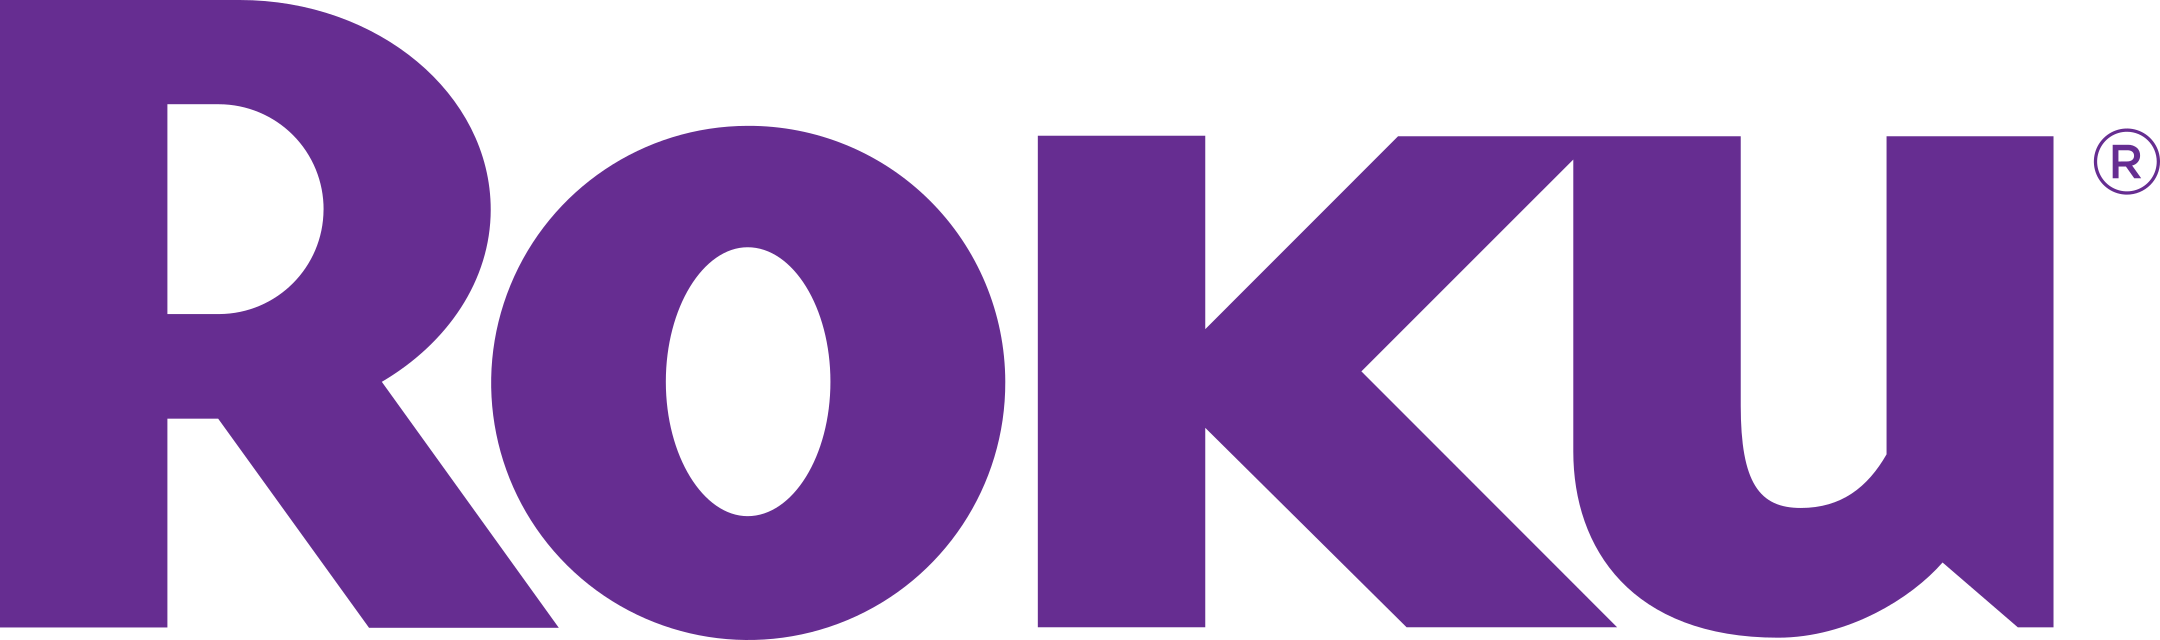 roku logo 1 - Roku Logo